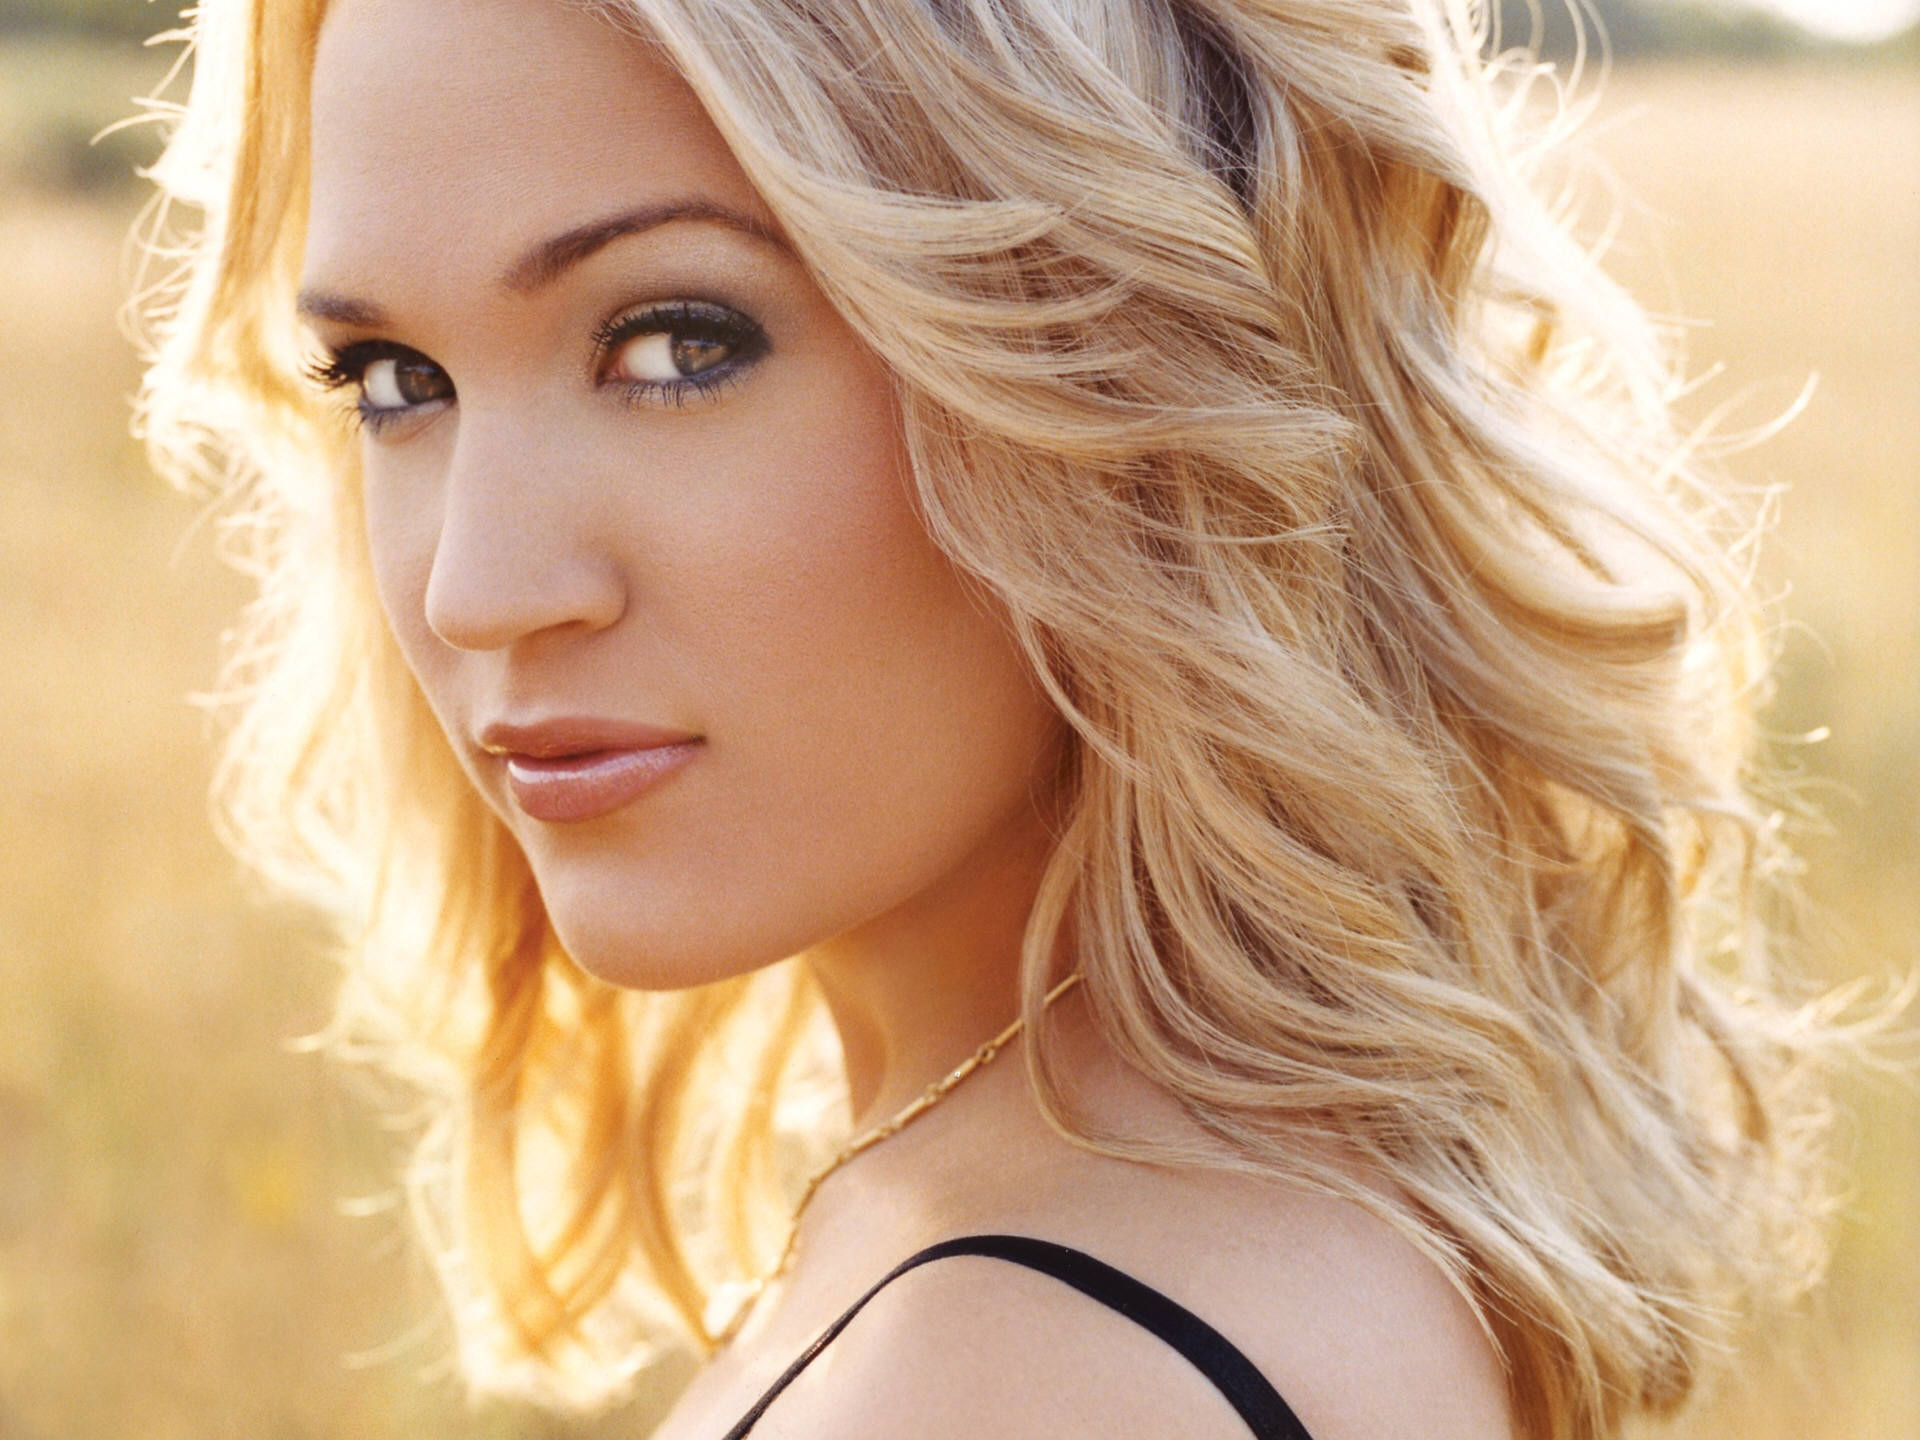 blondes, women, brown eyes, Carrie Underwood, faces - desktop wallpaper